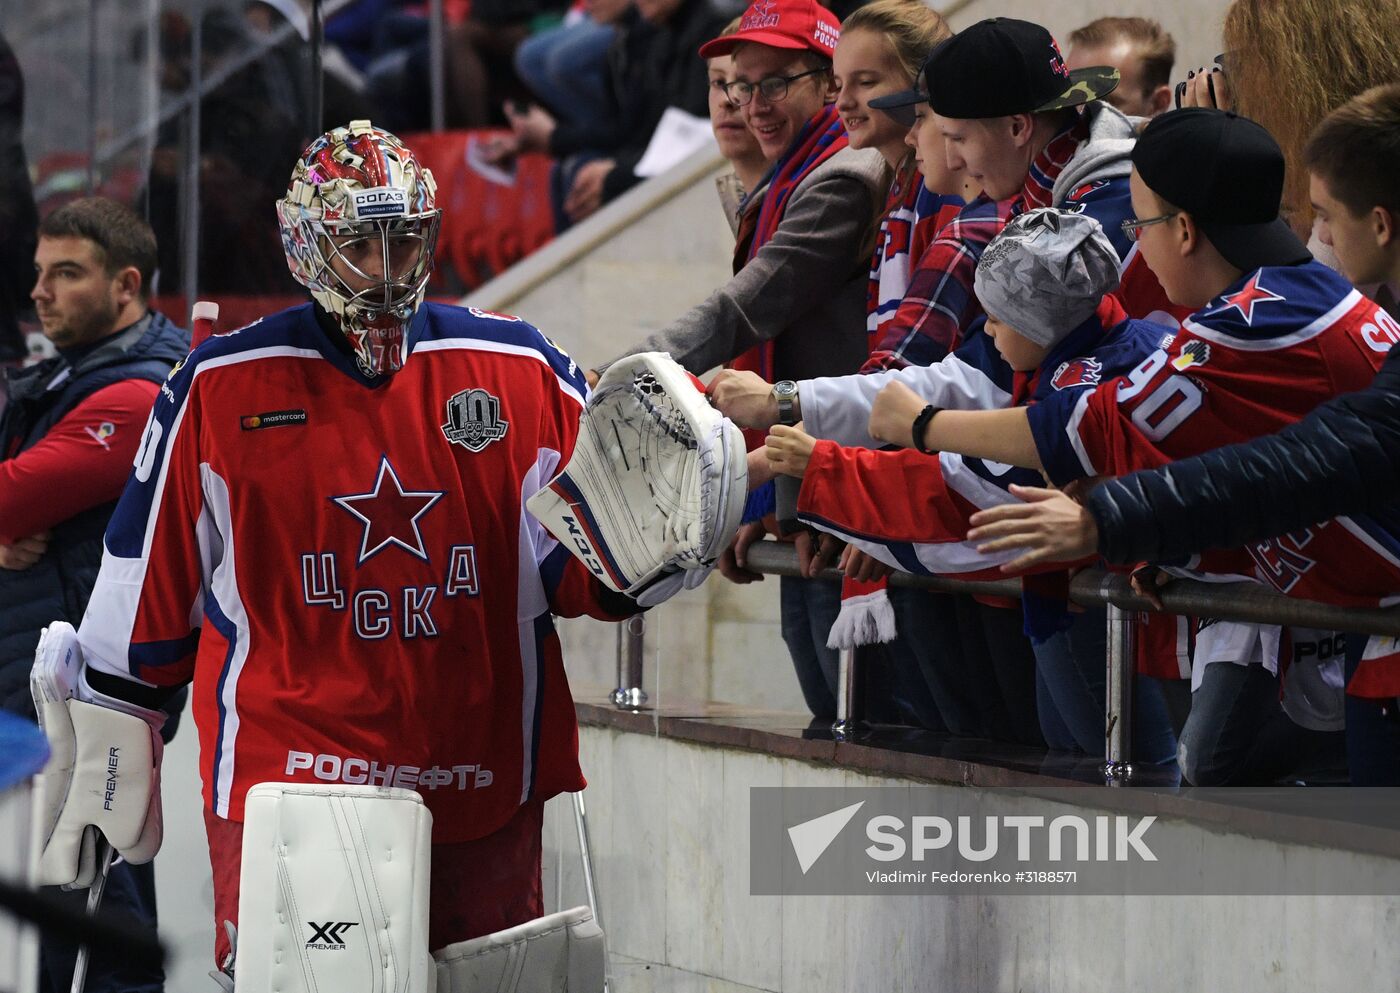 Kontinental Hockey League. CSKA vs. Dynamo (Moscow)